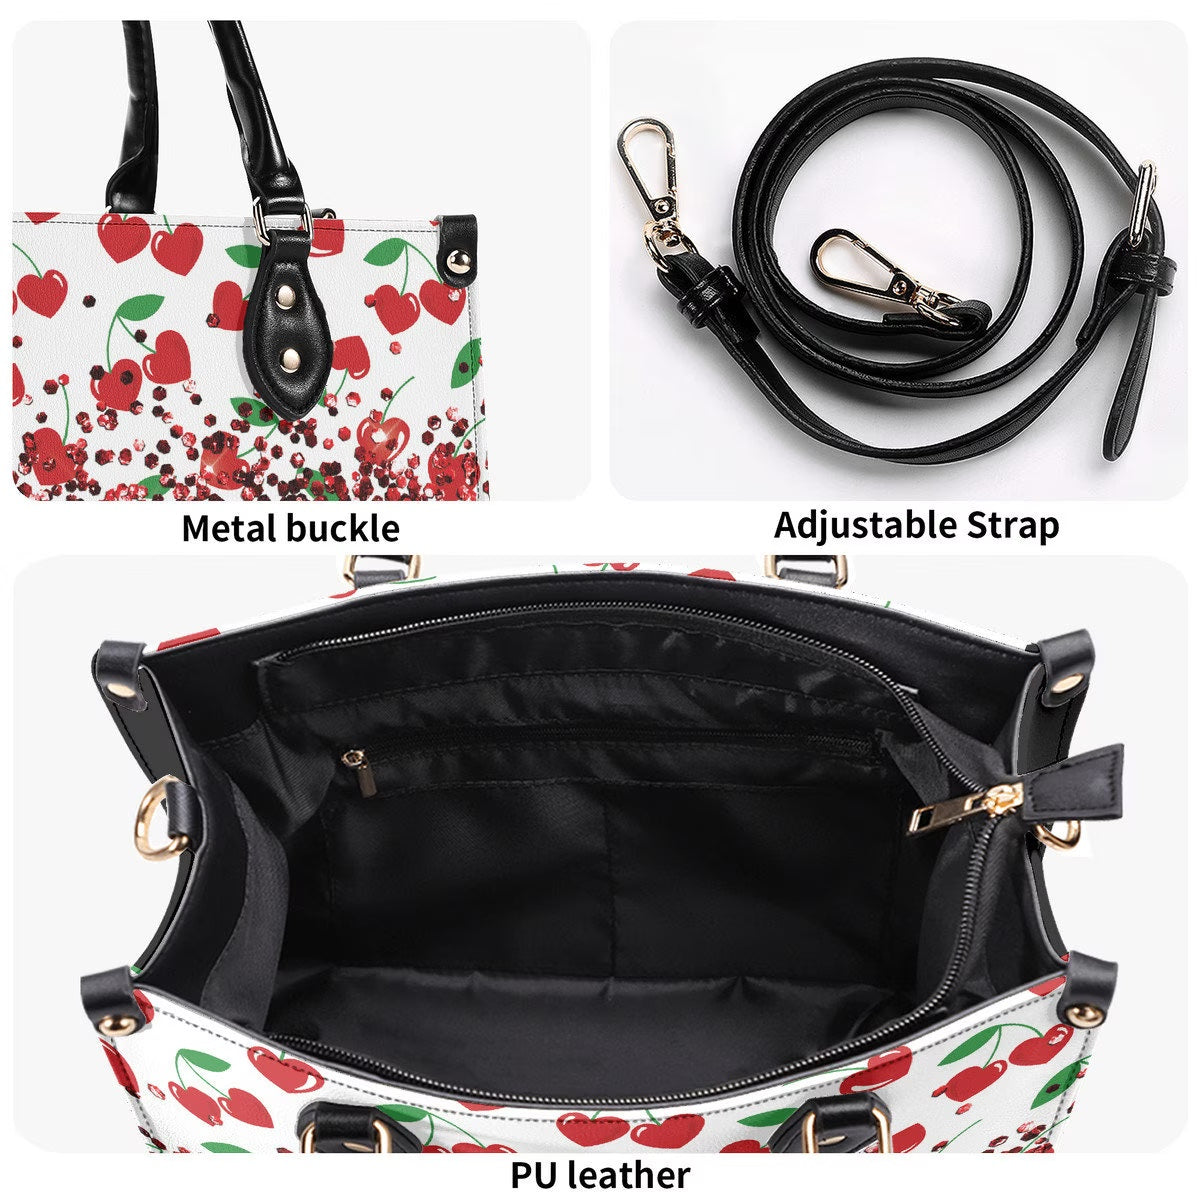 Red Cherry Drop Shoulder Bag | Luxury